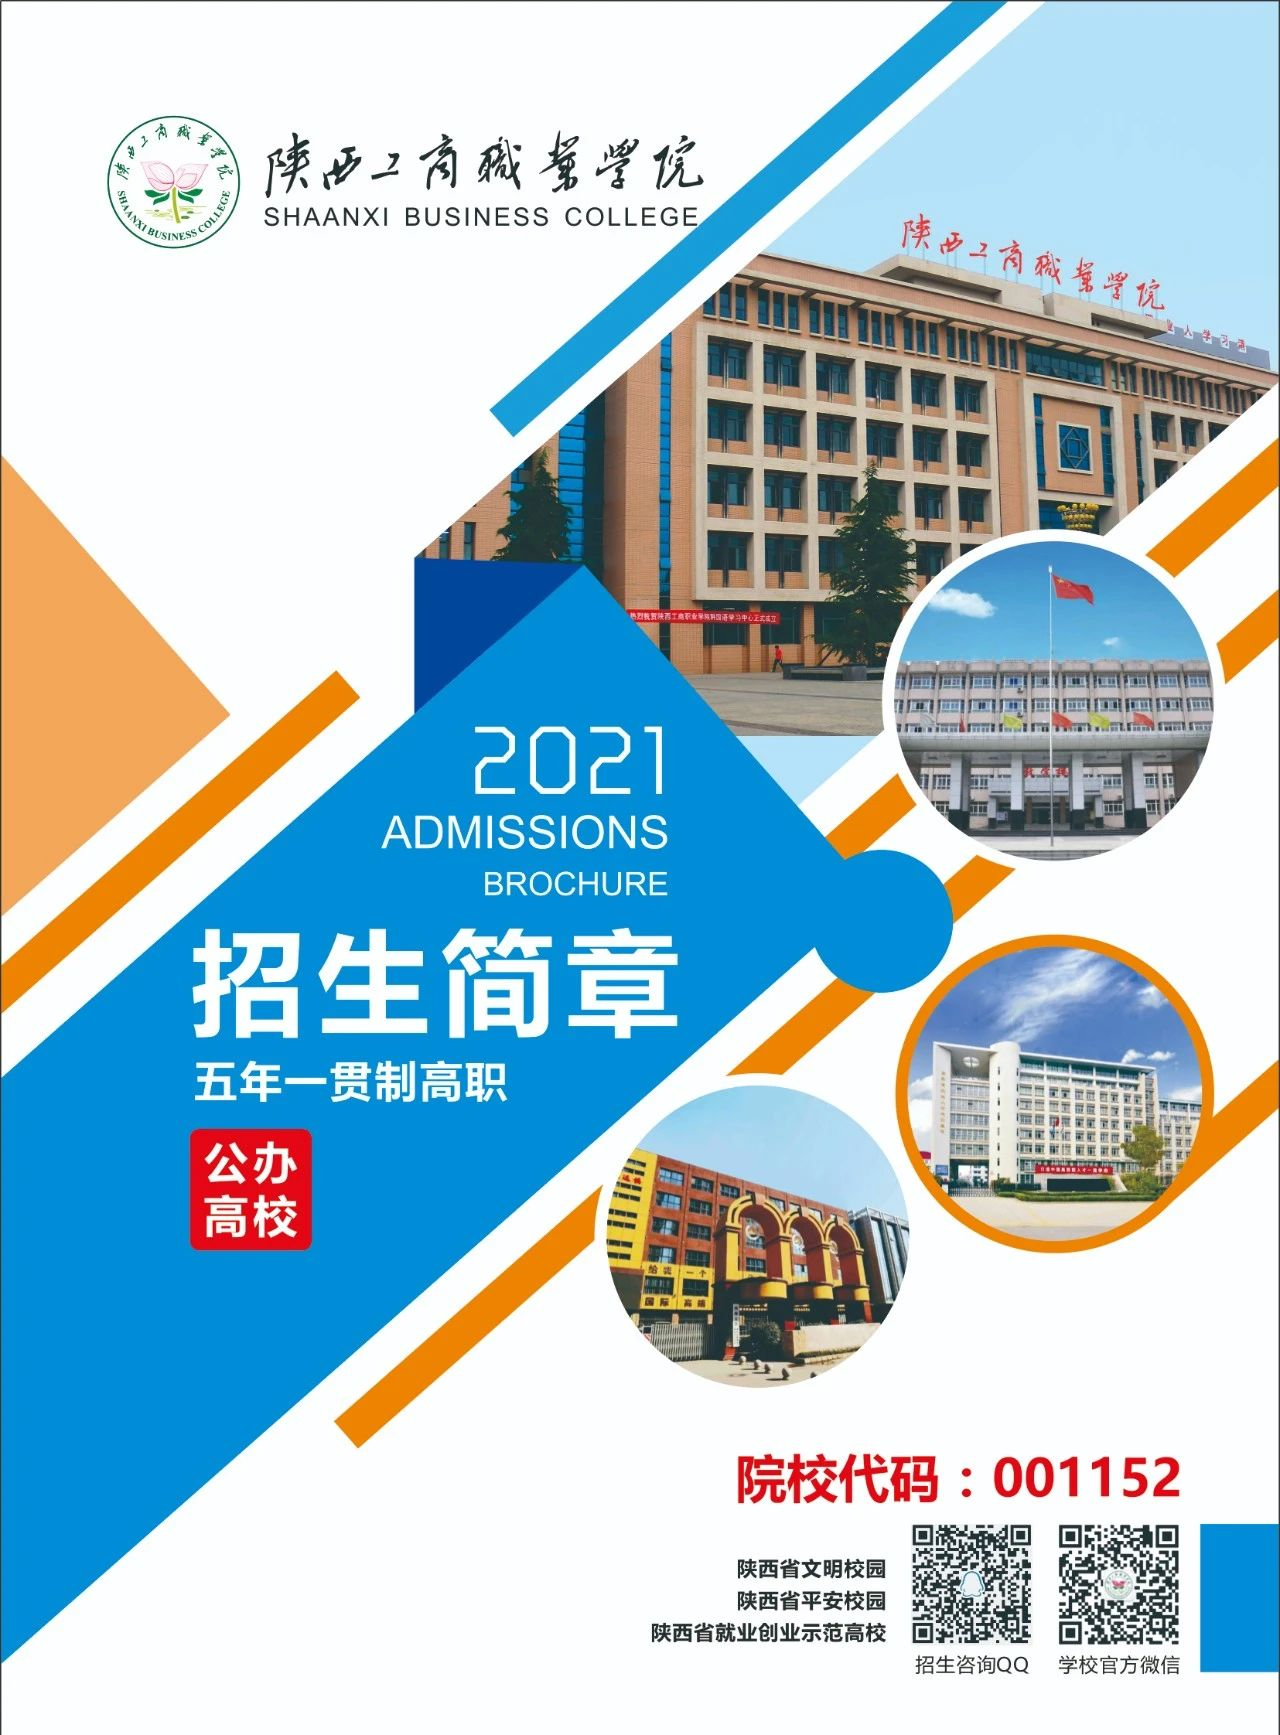 陕西工商职业学院入选“2021年度中国高职五十强”-学习在线